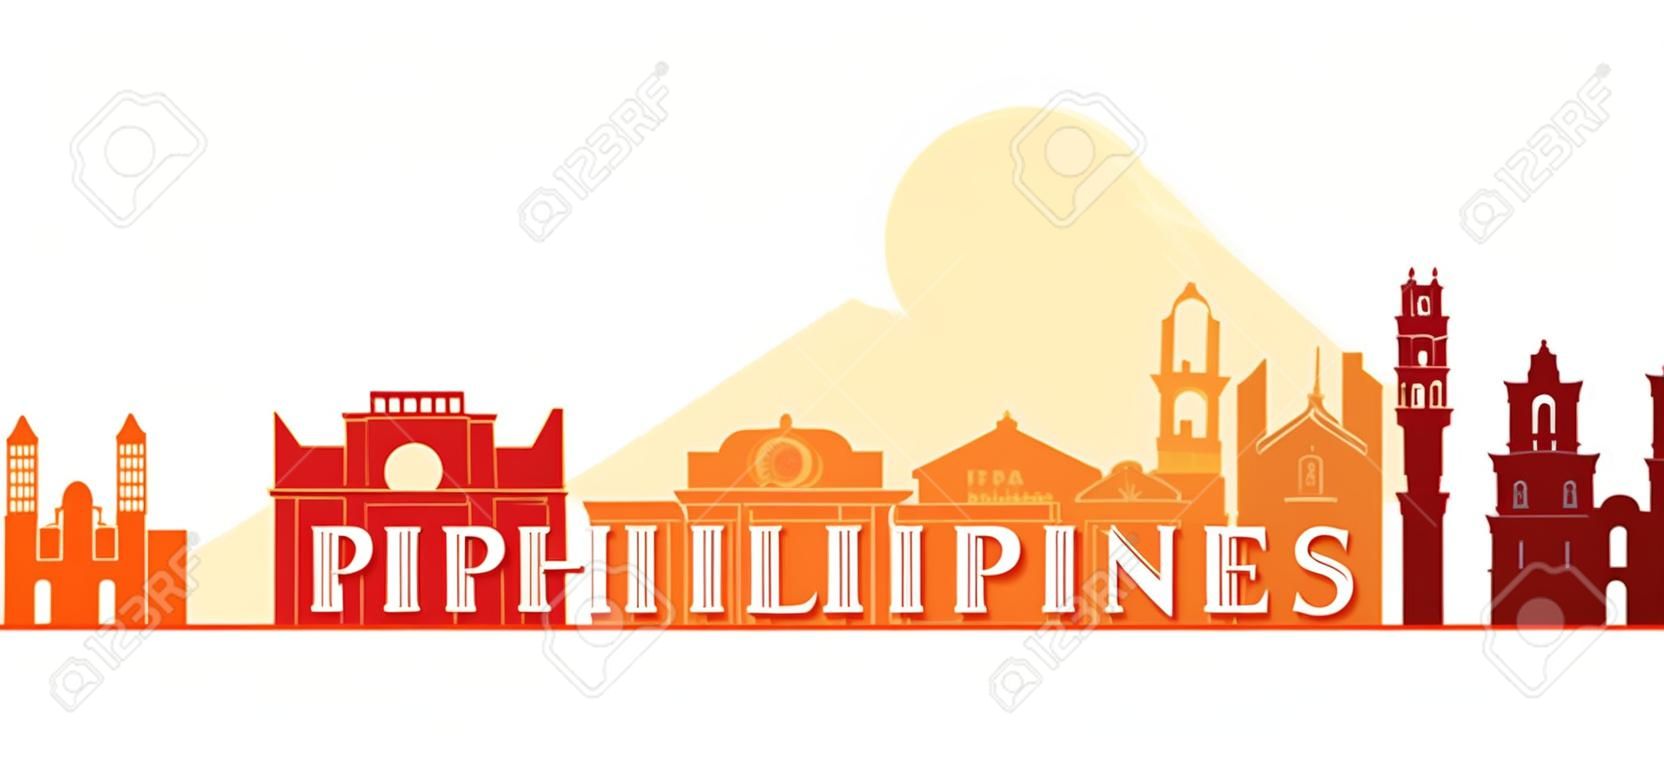 Philippinen Architektur Wahrzeichen Skyline, Form, Stadtbild, Reise und Touristenattraktion